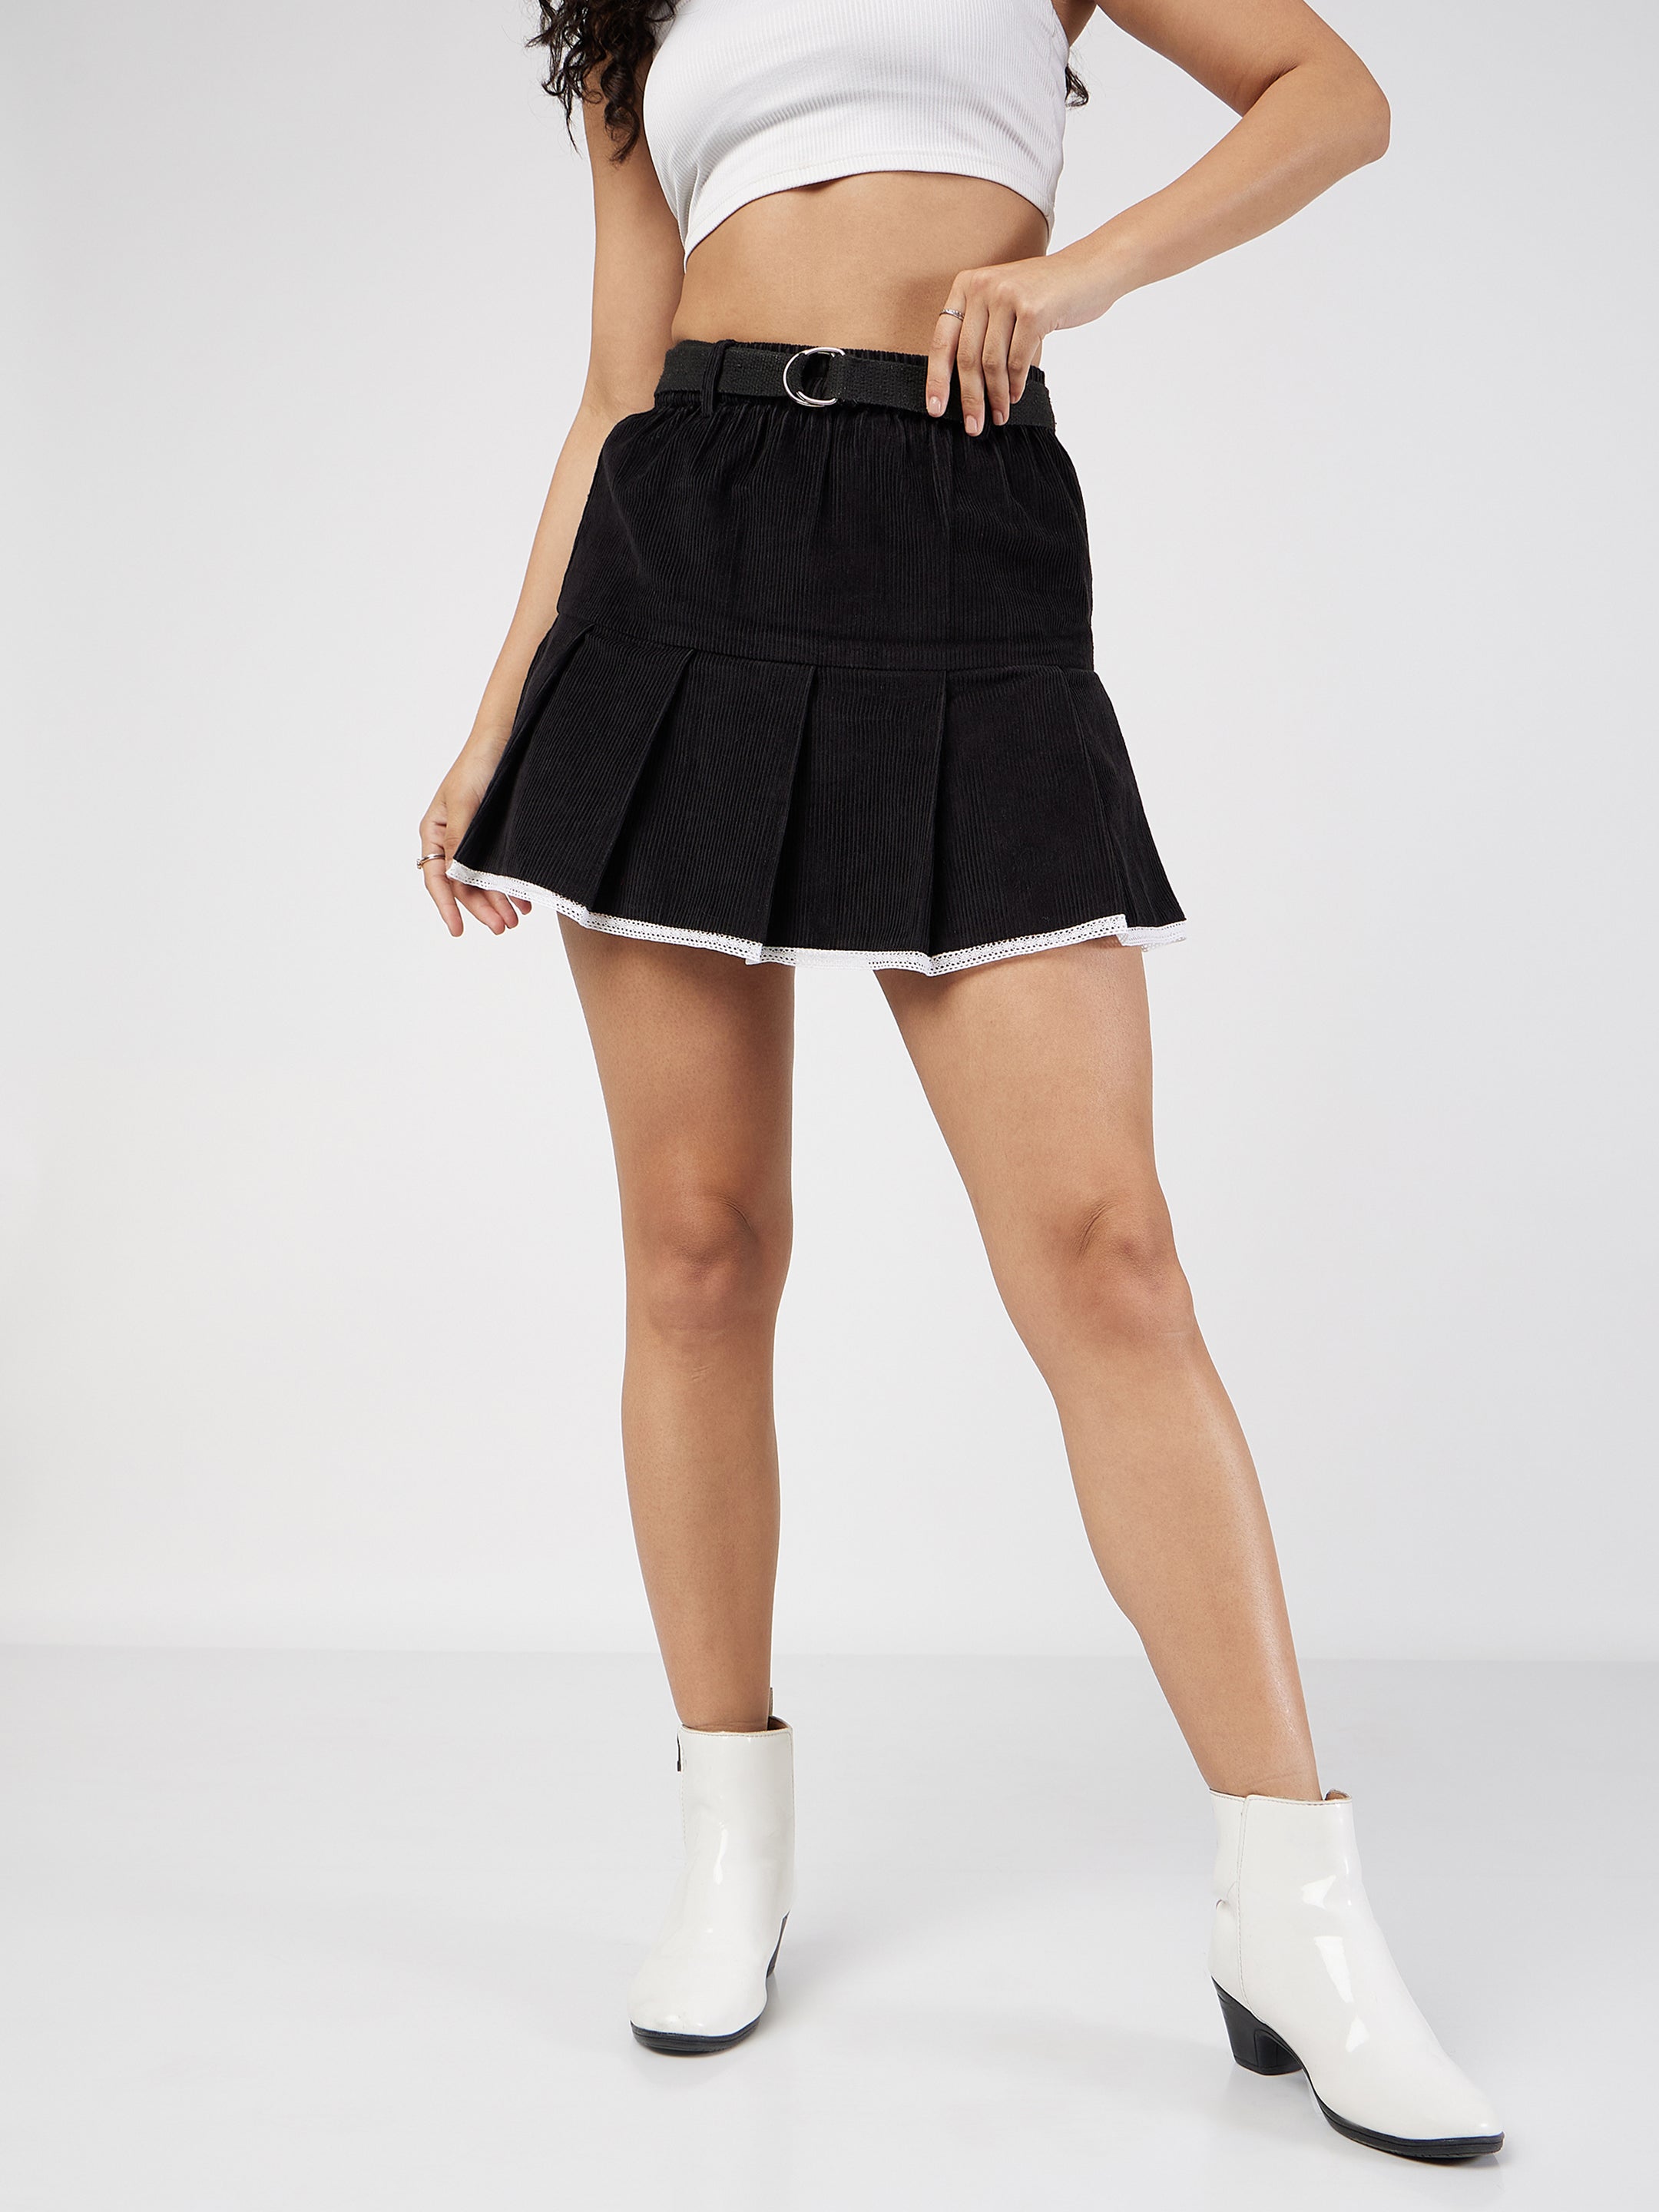 Women's Black Corduroy Pleated Mini Skirt - Lyush